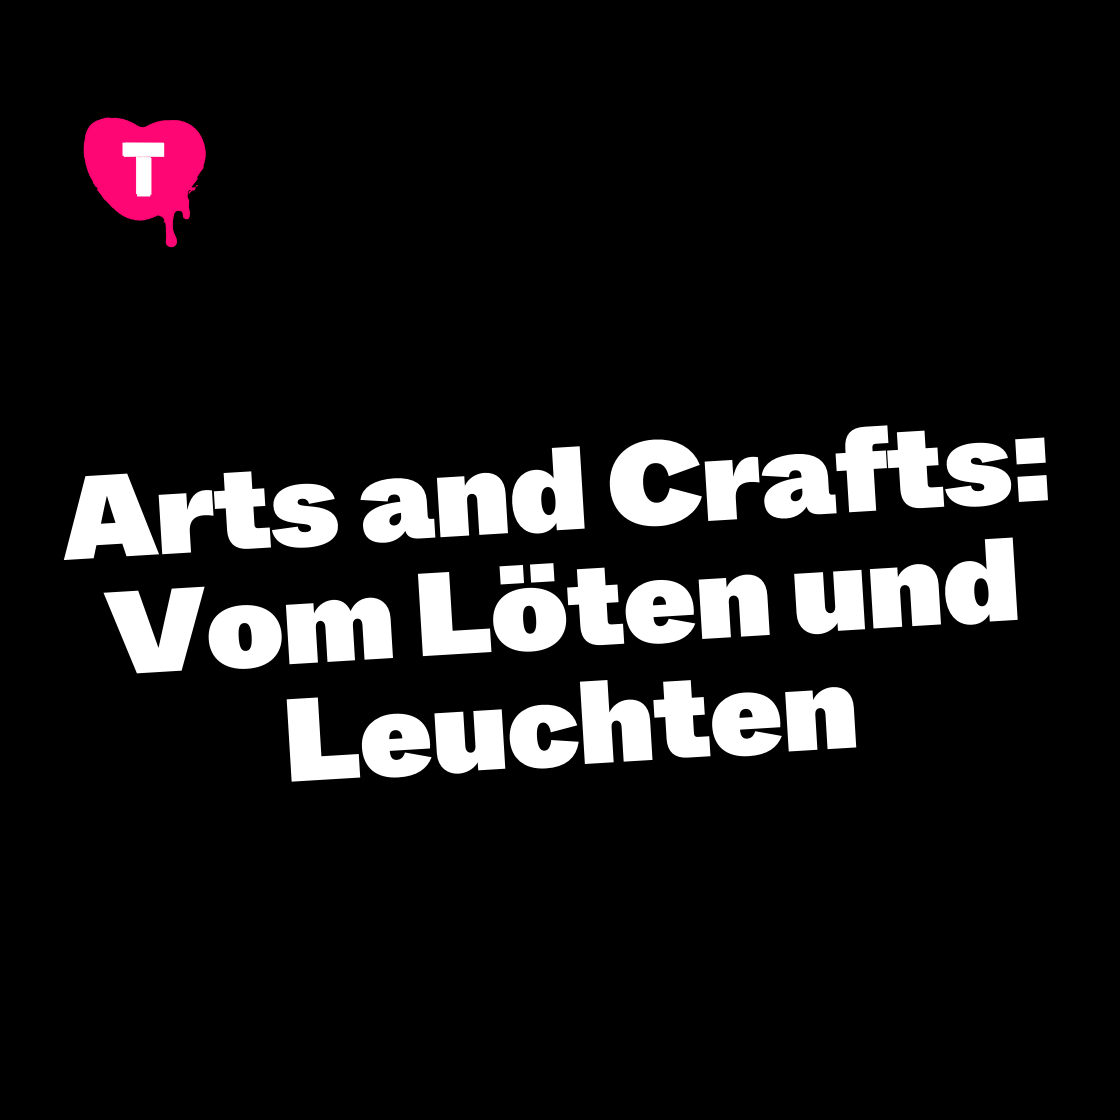 Arts and Crafts: Vom Löten und Leuchten